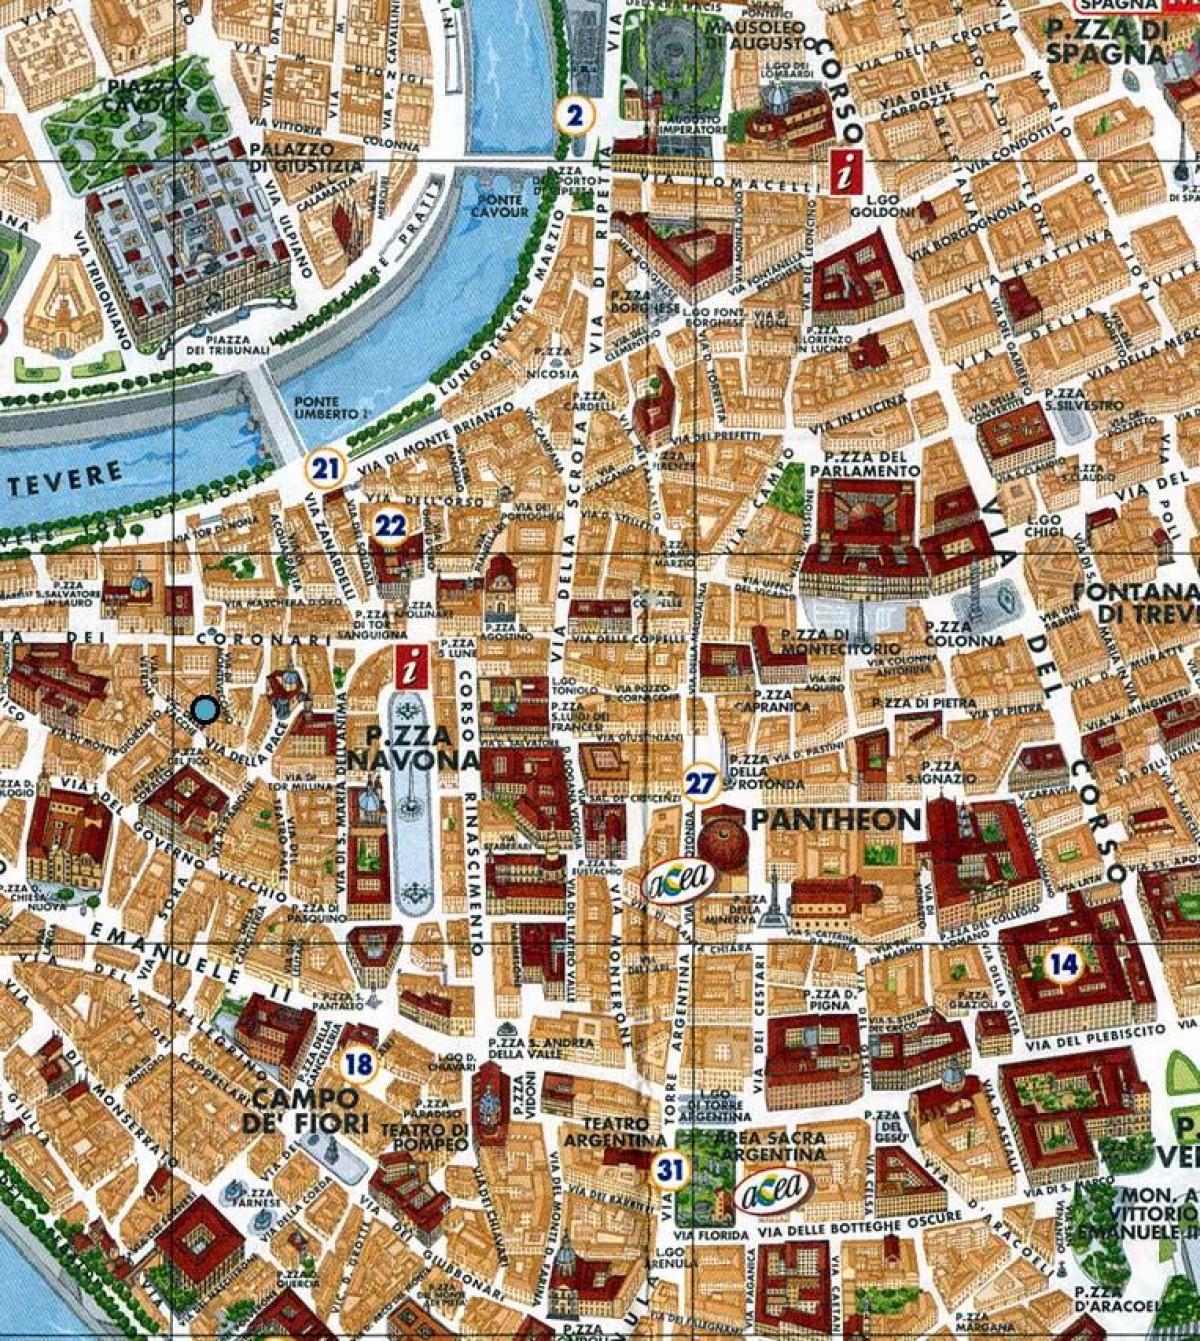 mappa di Roma-piazza navona